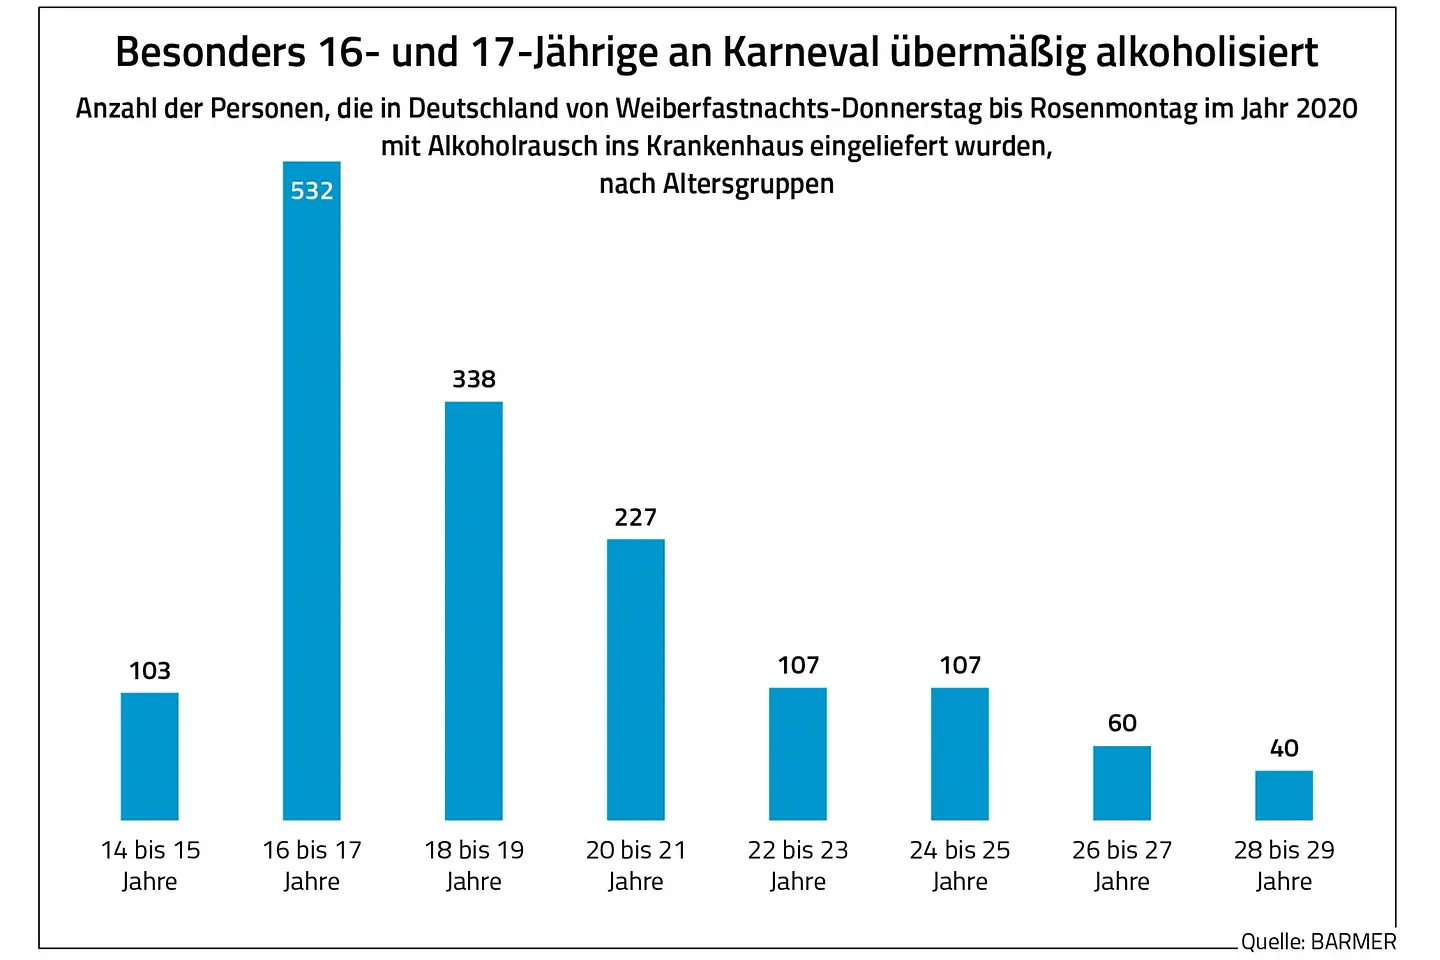 Die Grafik zeigt, dass besonders 16- und 17-Jährige an Karneval im Jahr 2020 mit Alkoholrausch im Krankenhaus waren.